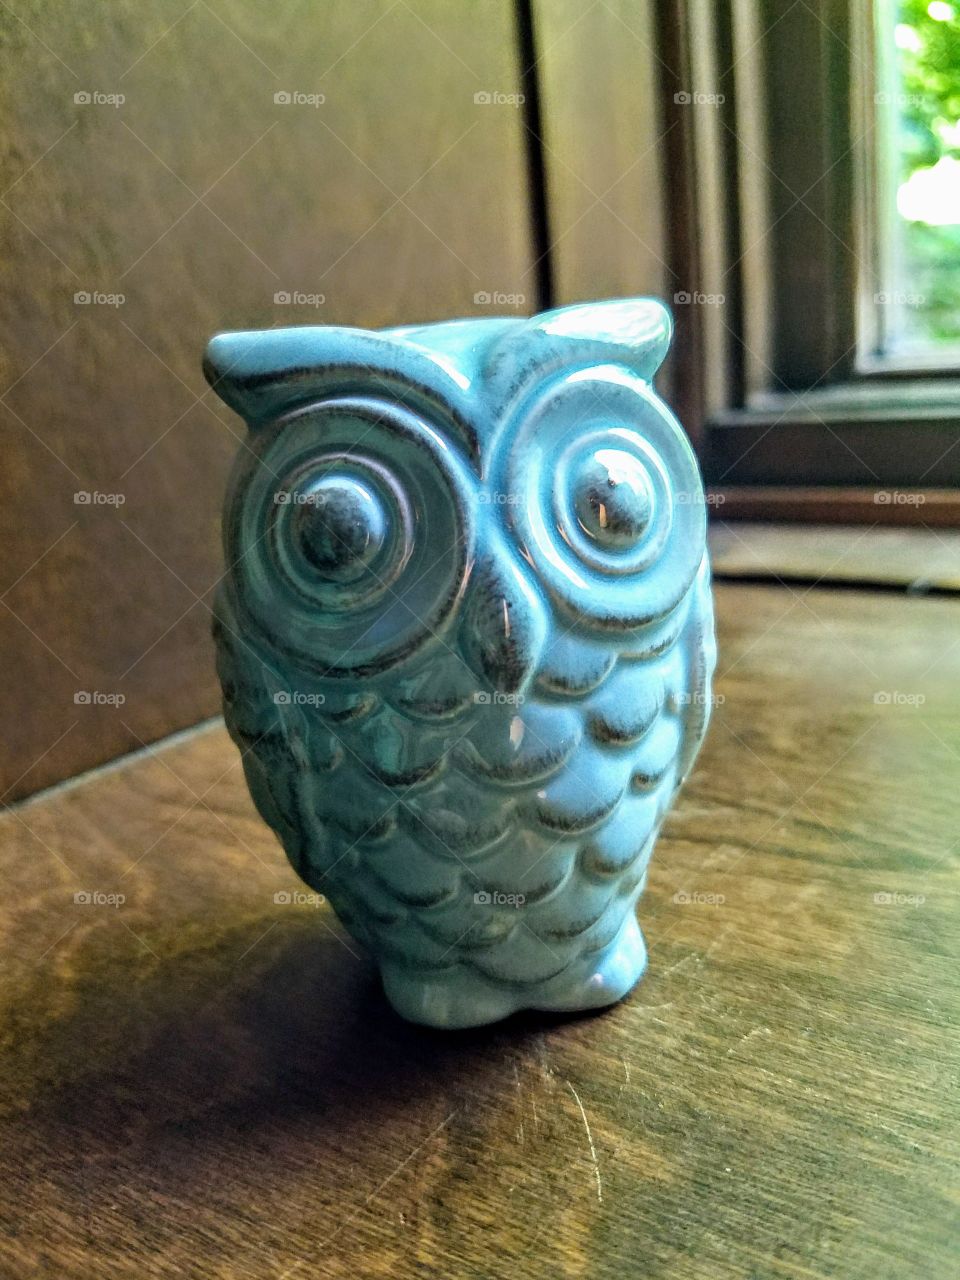 Blue glass owl figure